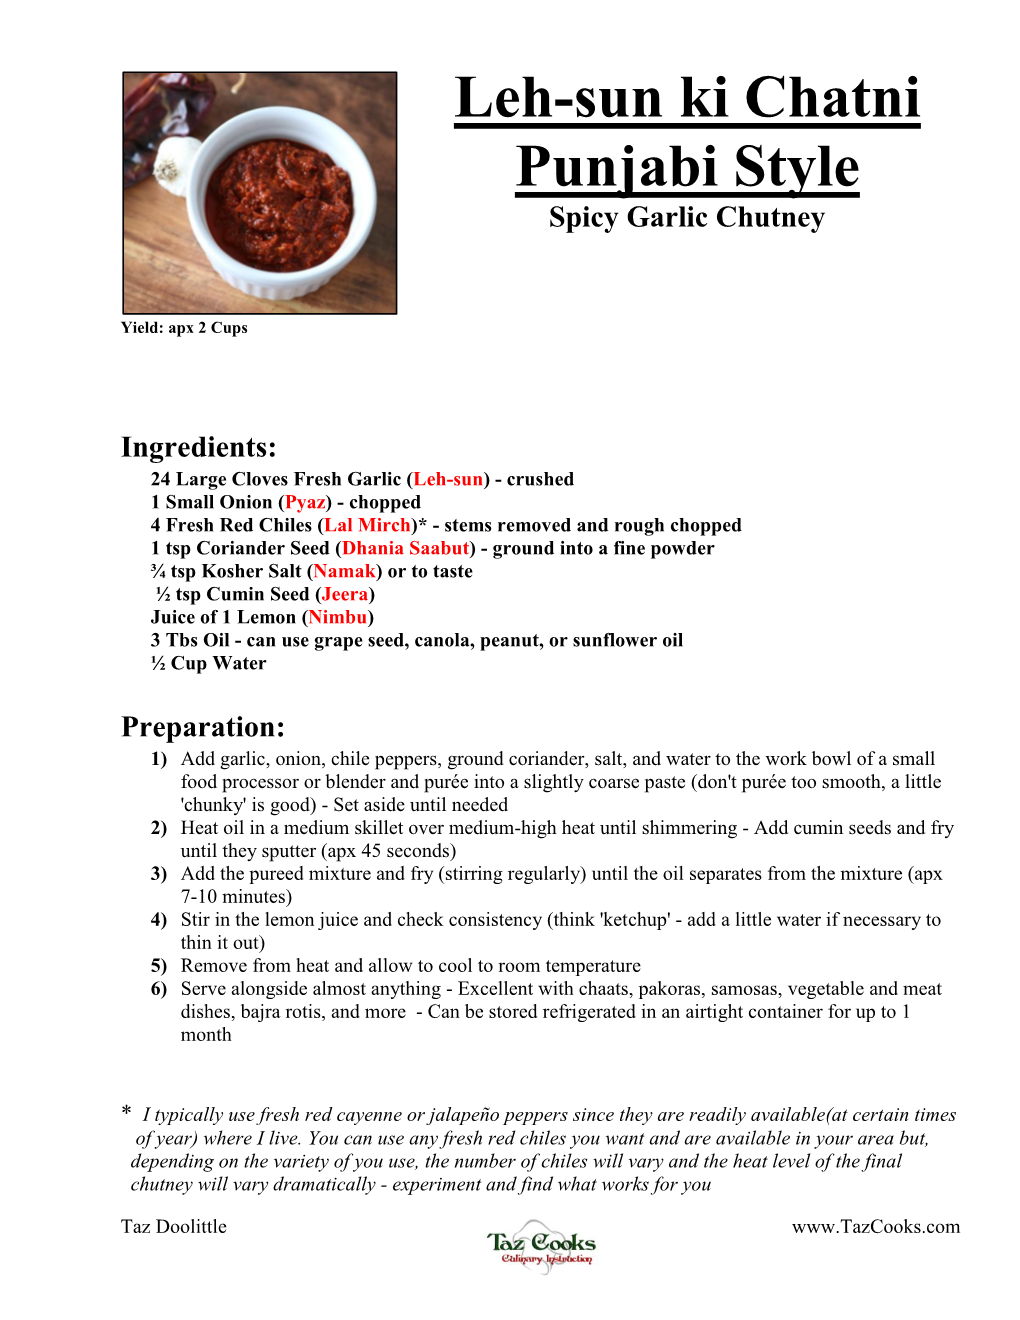 Leh-Sun Ki Chatni Punjabi Style Spicy Garlic Chutney